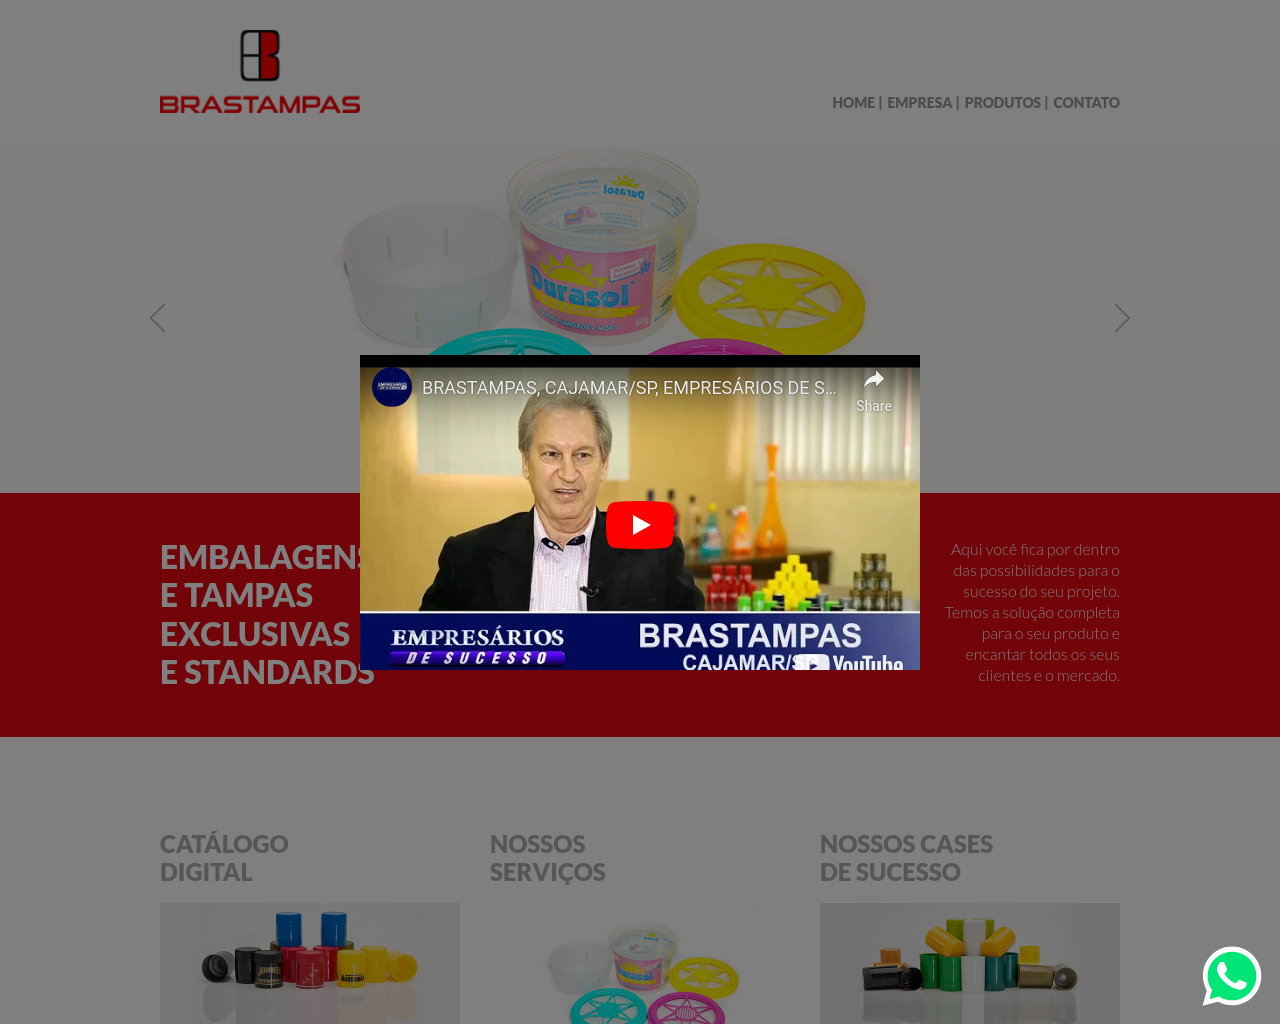 brastampas.com.br